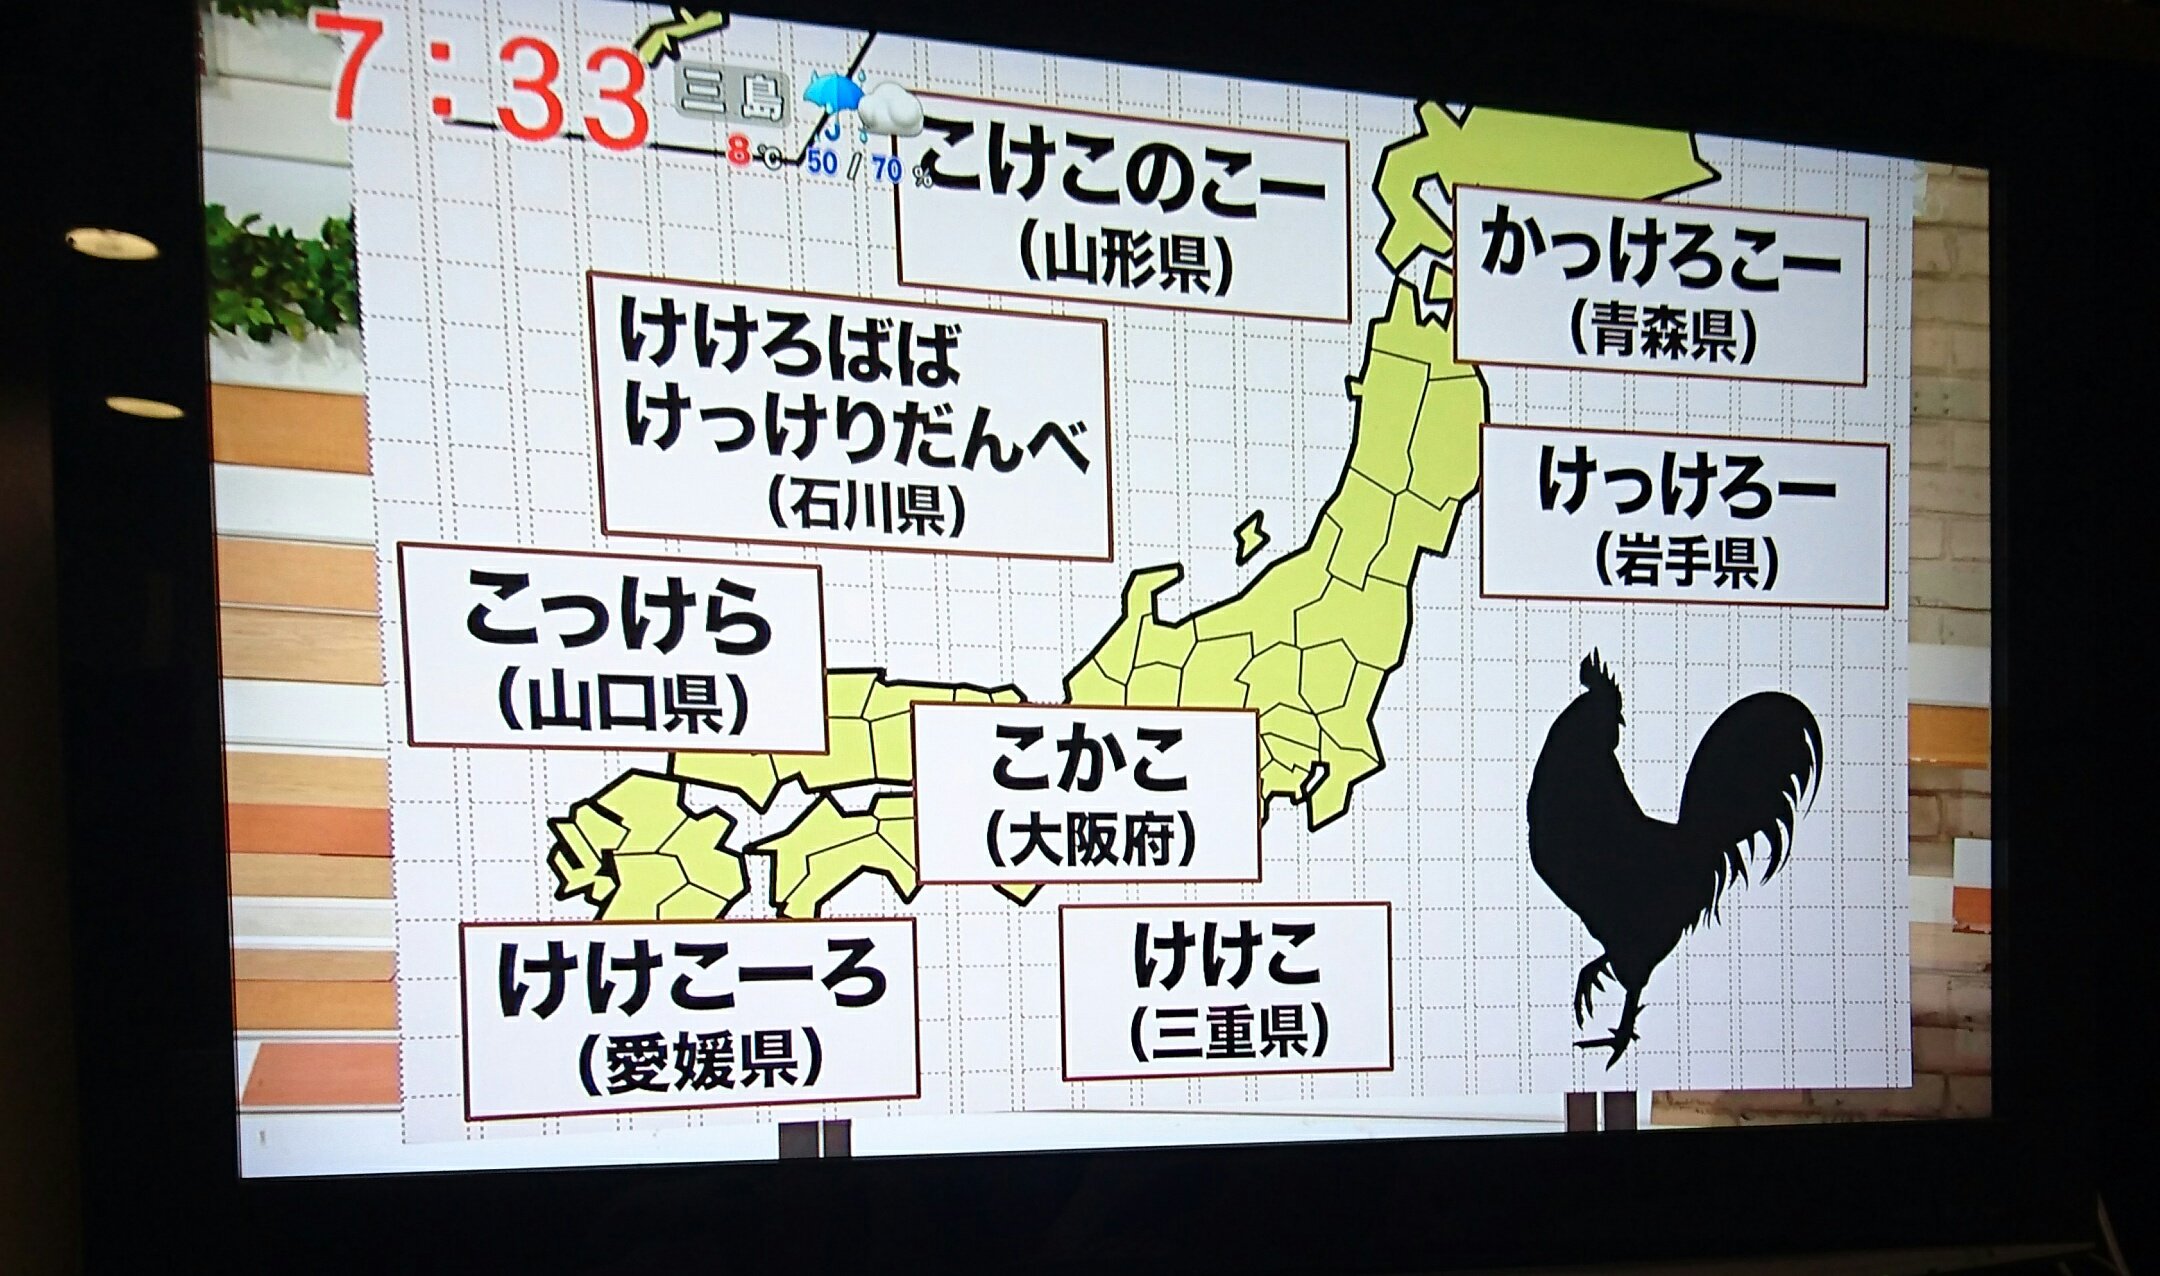 しーぜくす 地方別鶏の鳴き声の聞こえ方 石川県は本当に鶏が鳴いていたのか